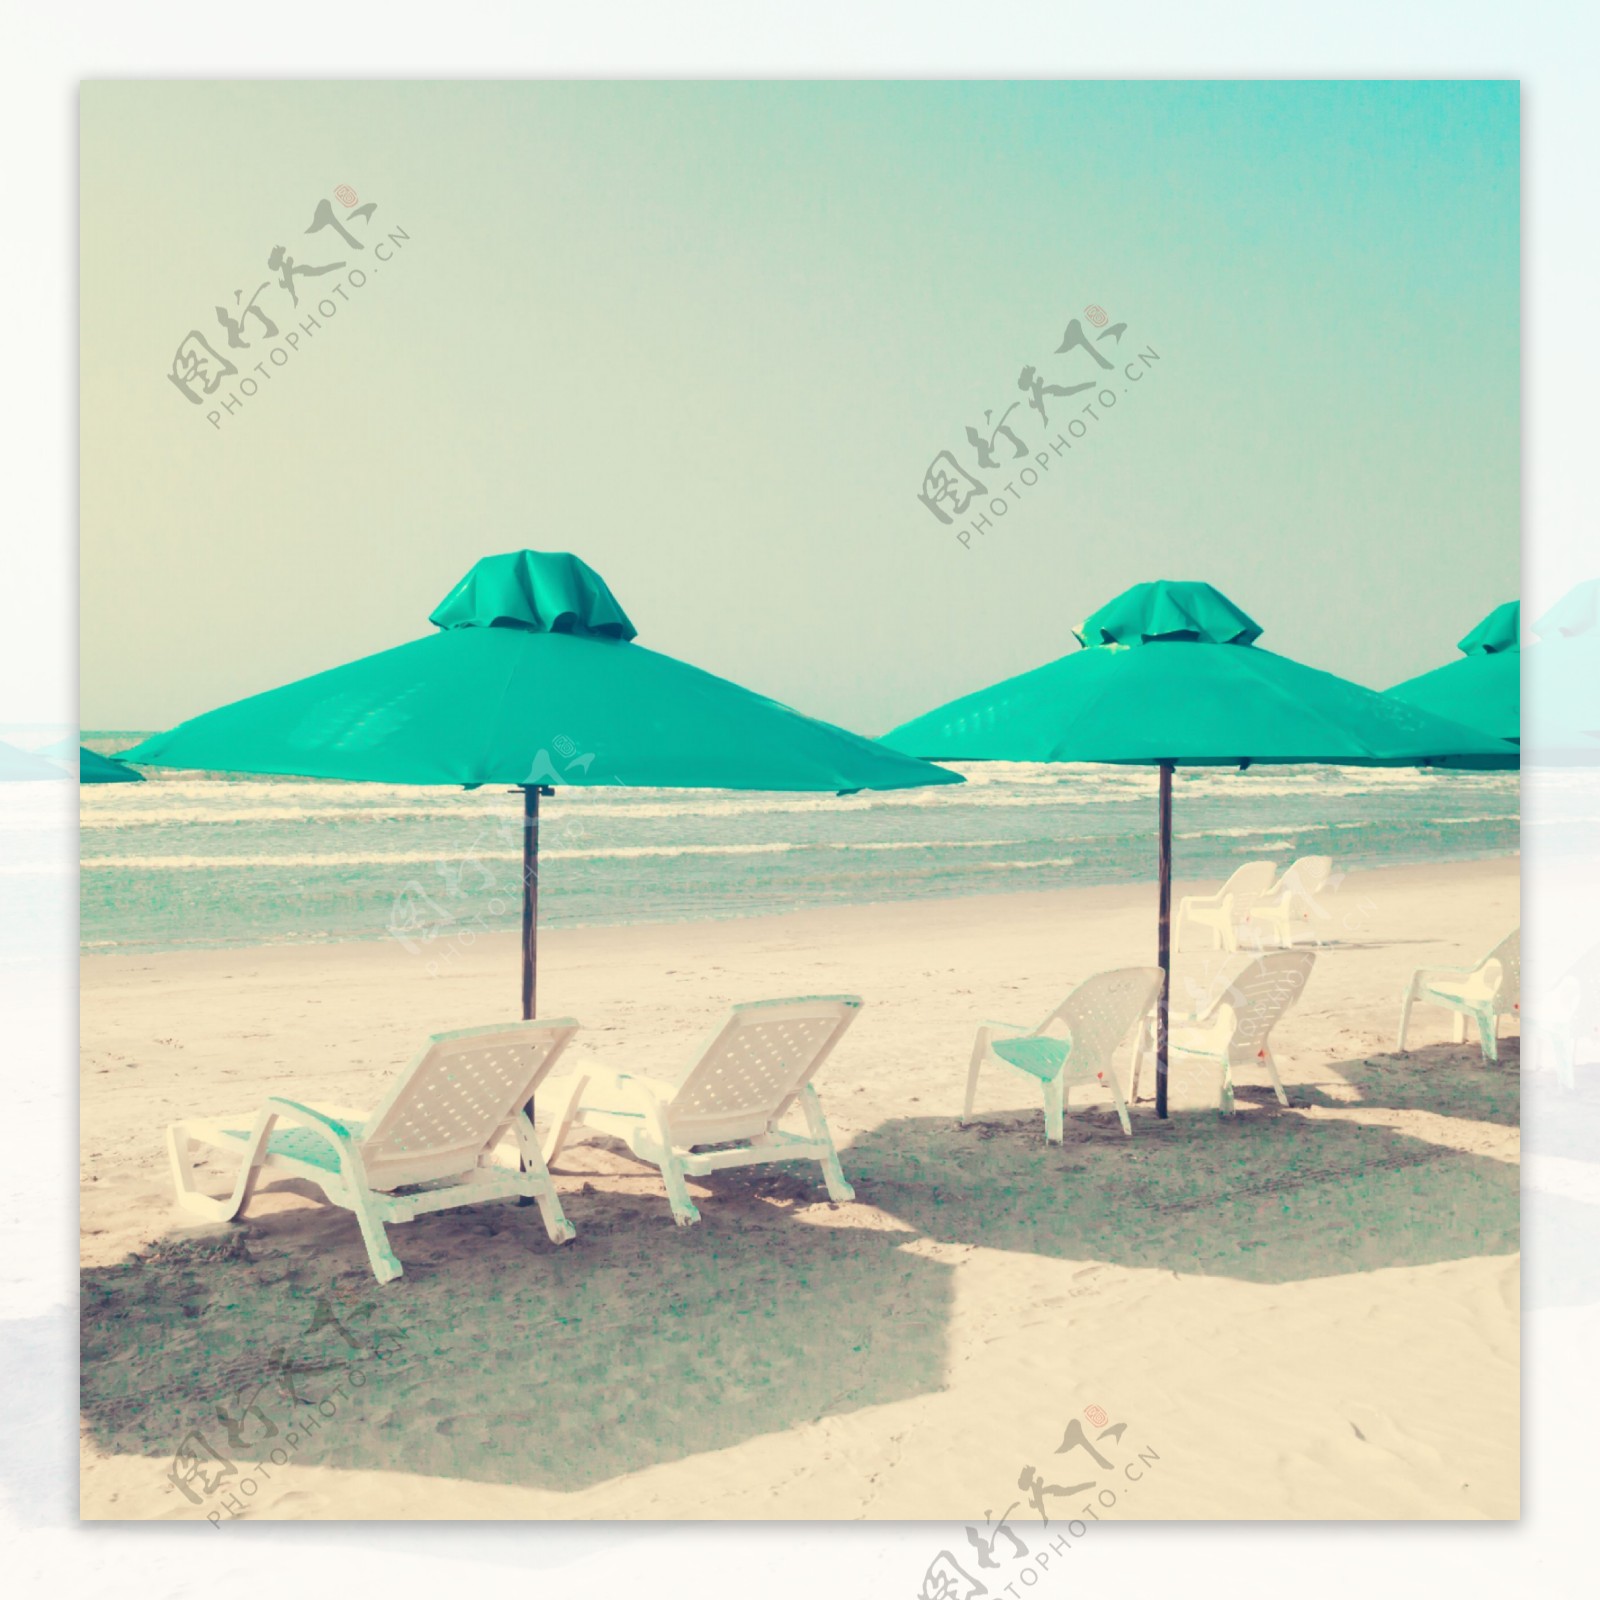 沙滩凉椅与遮阳伞